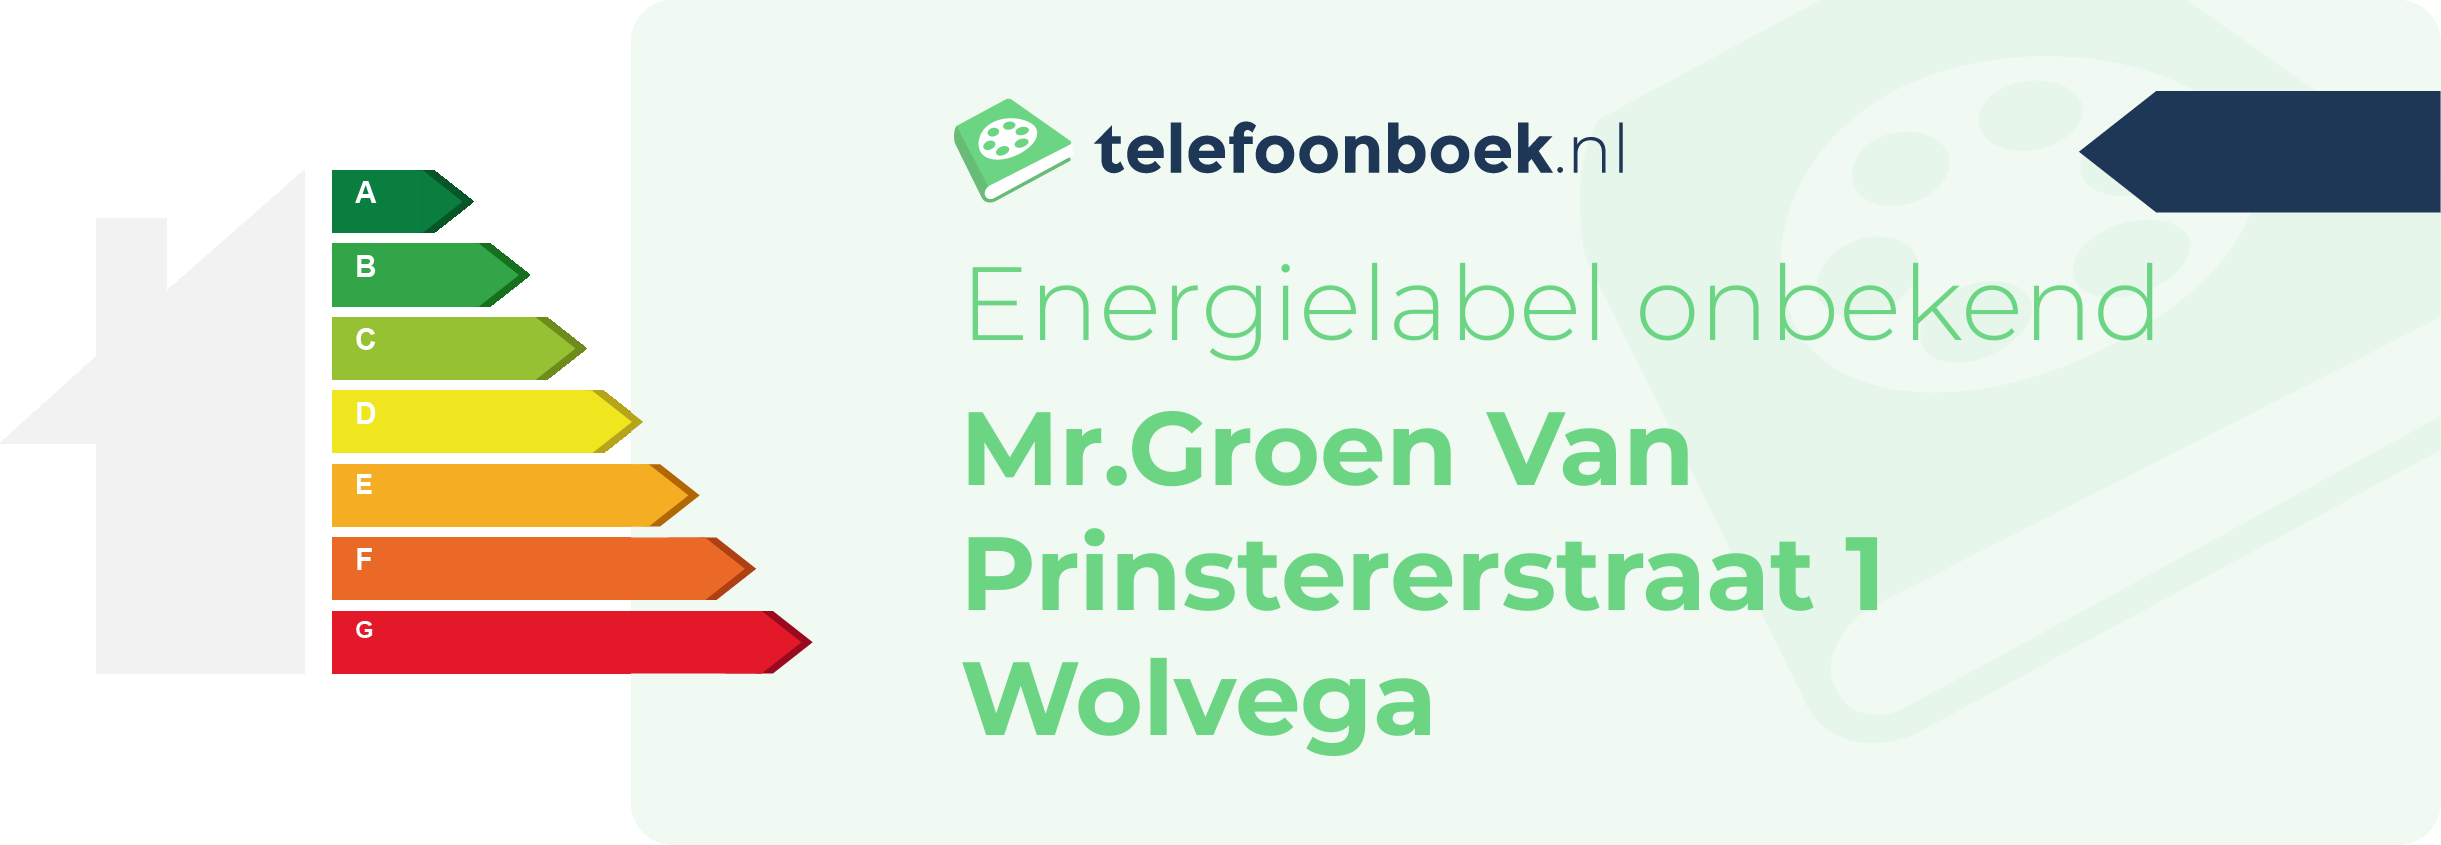 Energielabel Mr.Groen Van Prinstererstraat 1 Wolvega